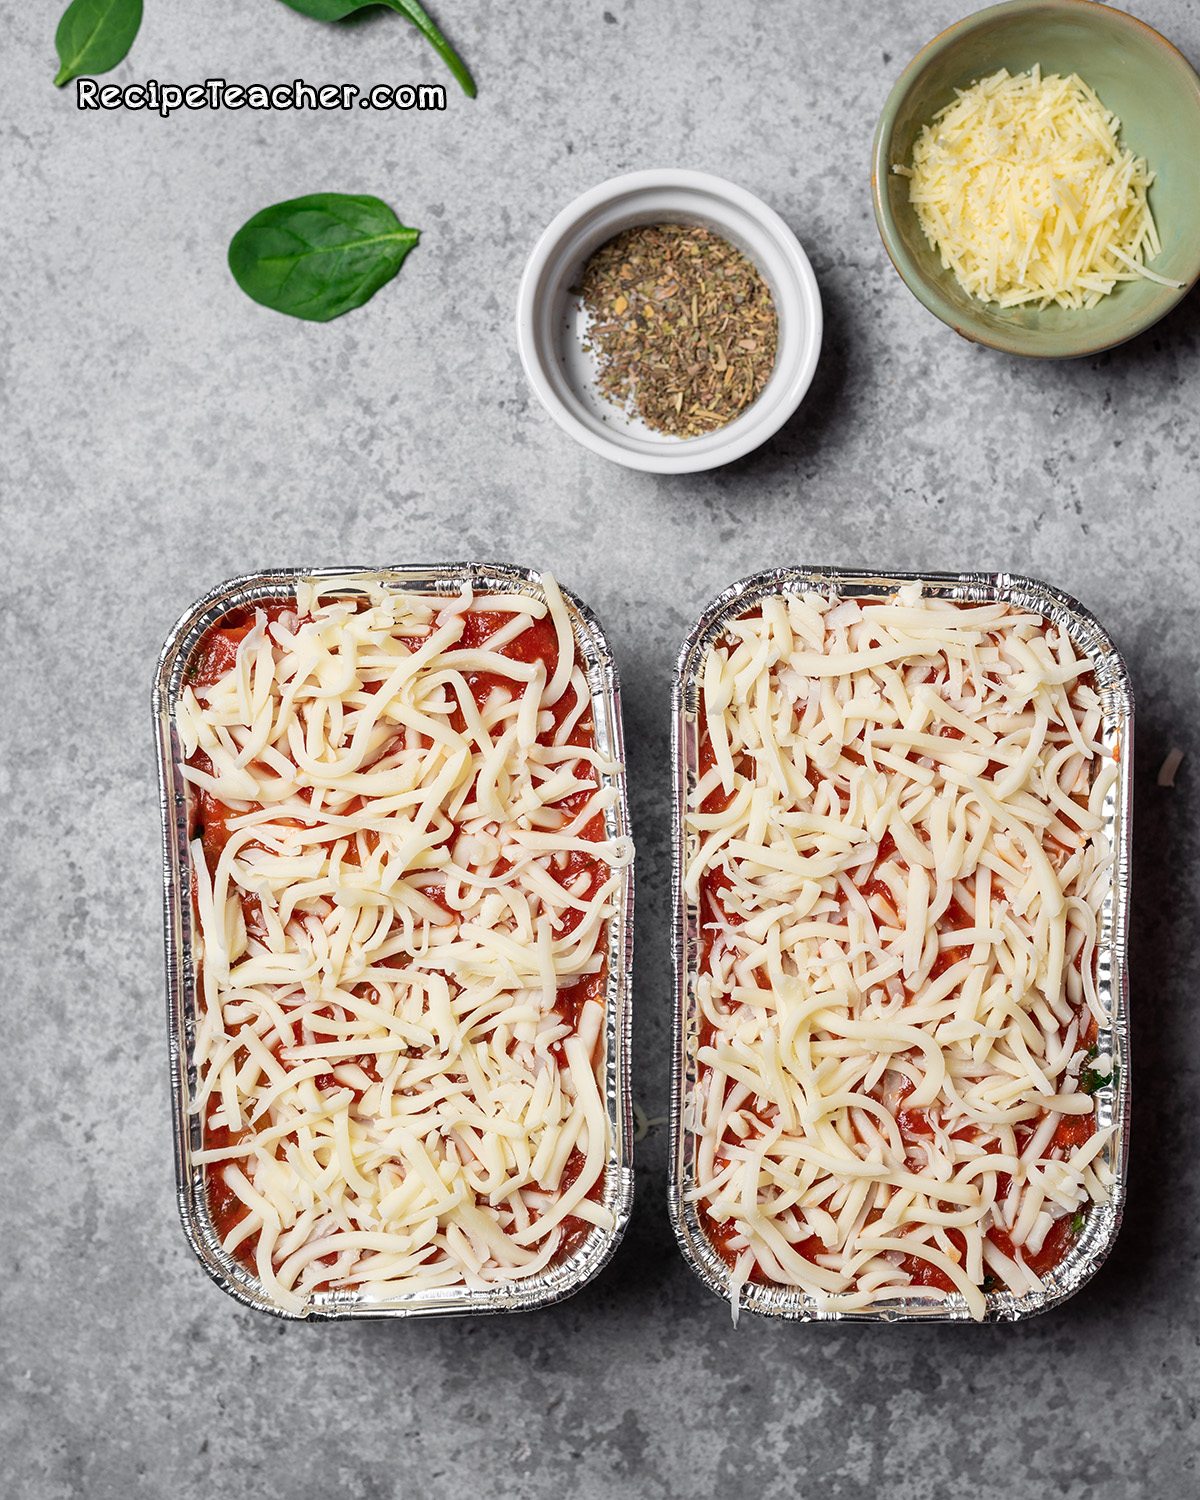 Recipe for Instant Pot lasagna